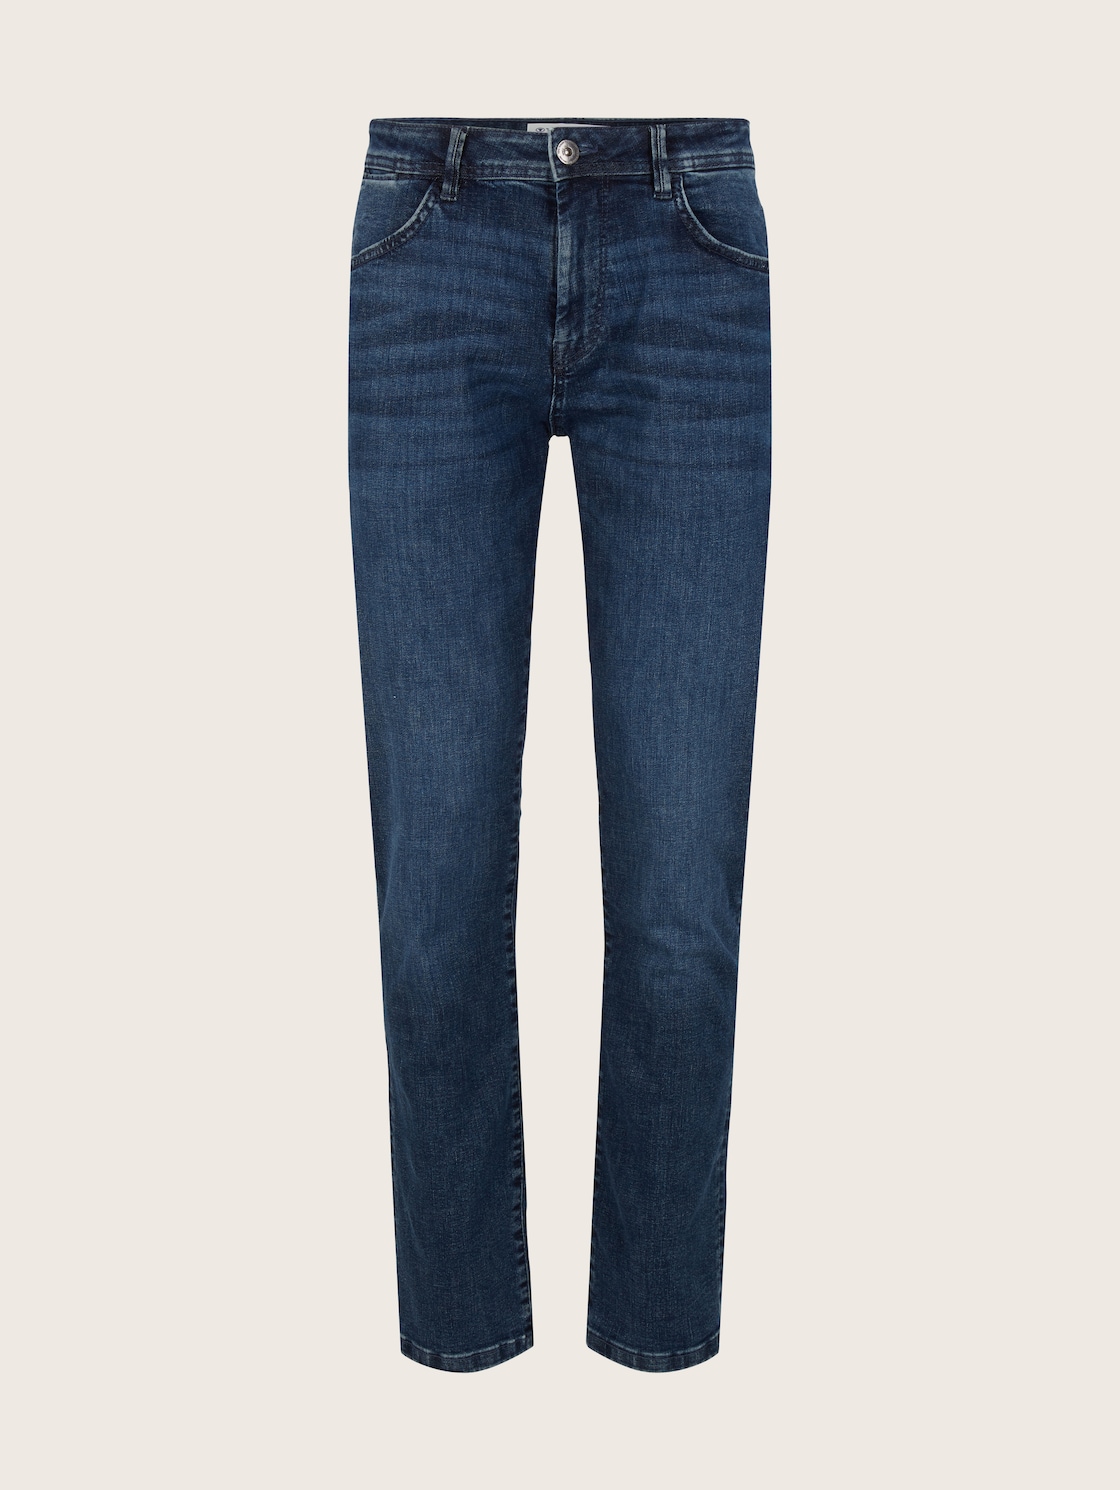 TOM TAILOR Herren Regular Slim Josh Jeans mit LYCRA ®, blau, Gr. 31/30 von Tom Tailor